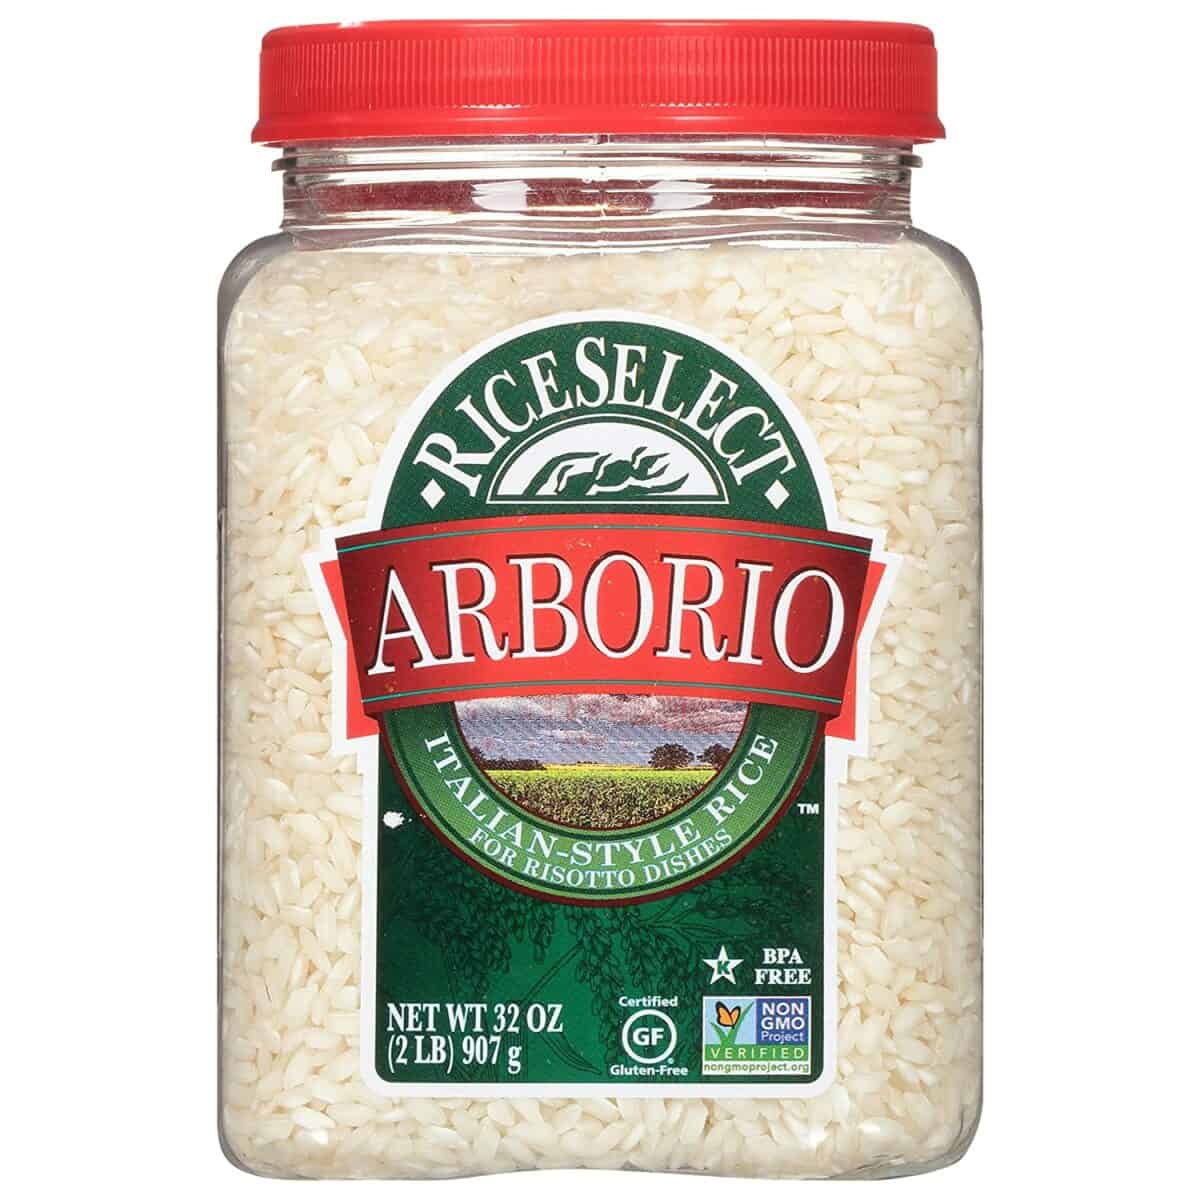 Το ρύζι Arborio είναι ένα καλό υποκατάστατο του γλυκού κολλώδους ρυζιού